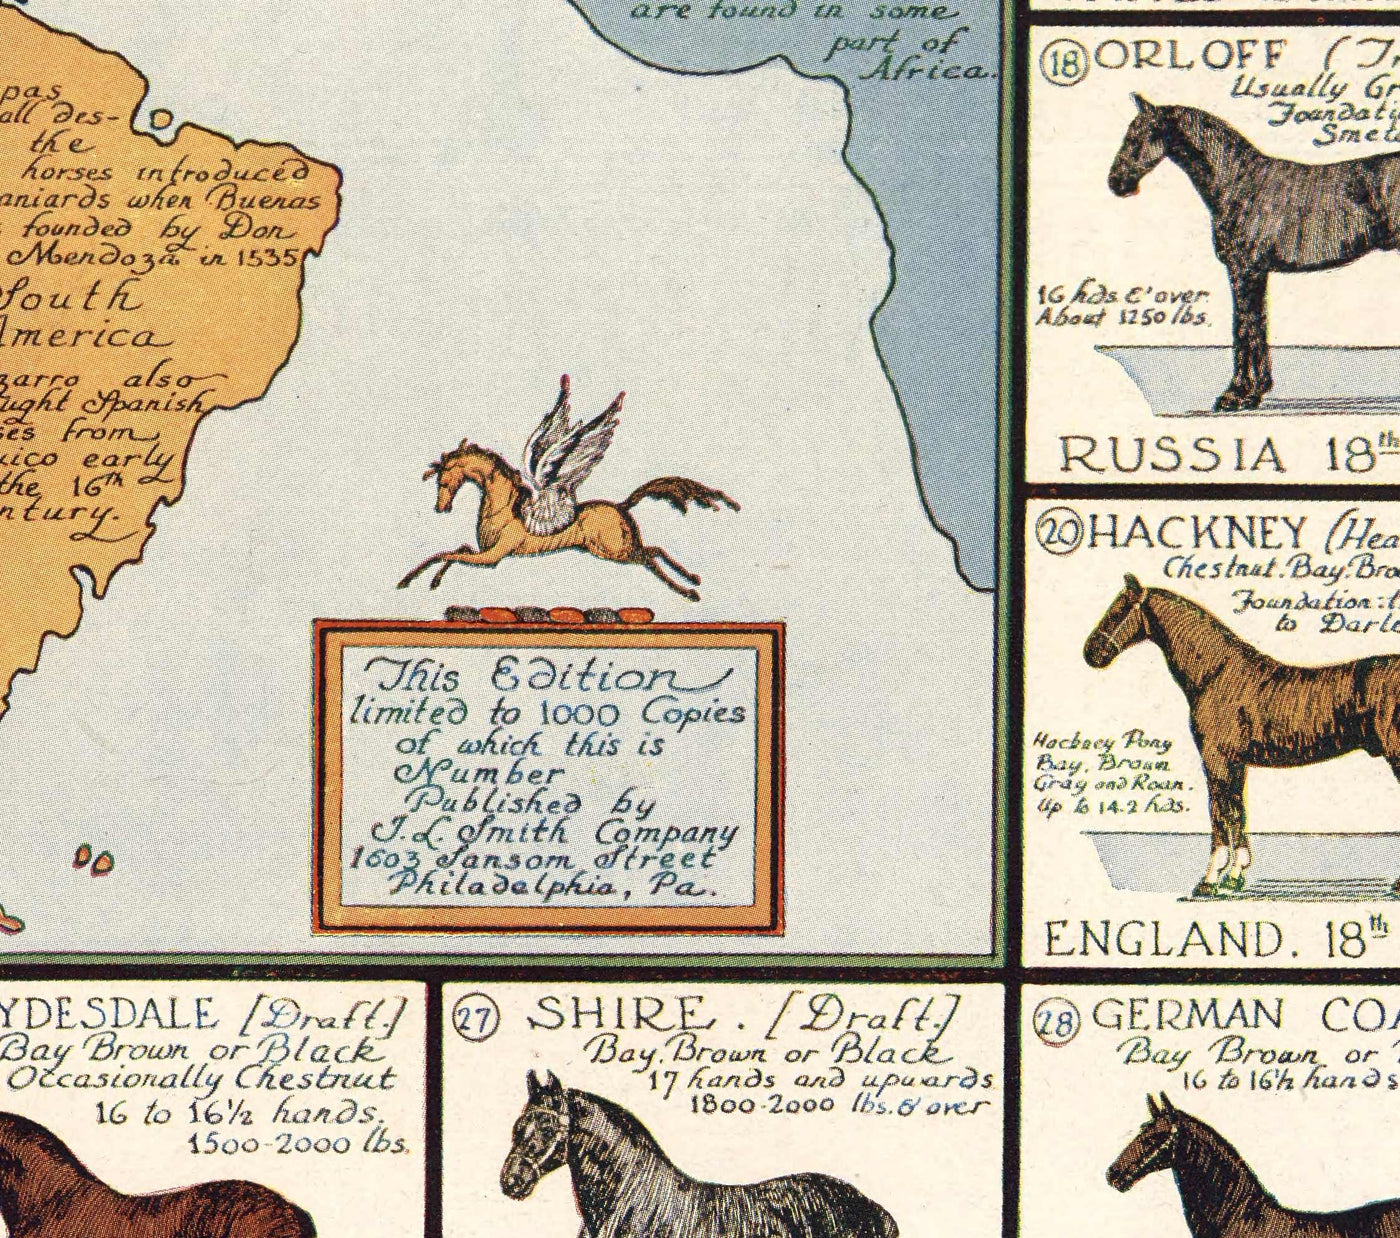 Old Horse Map, 1936 - Old World Atlas Chart mit den Ursprüngen der Rassen - Vollblut, Mustang, Shire, Polo Pony, Araber